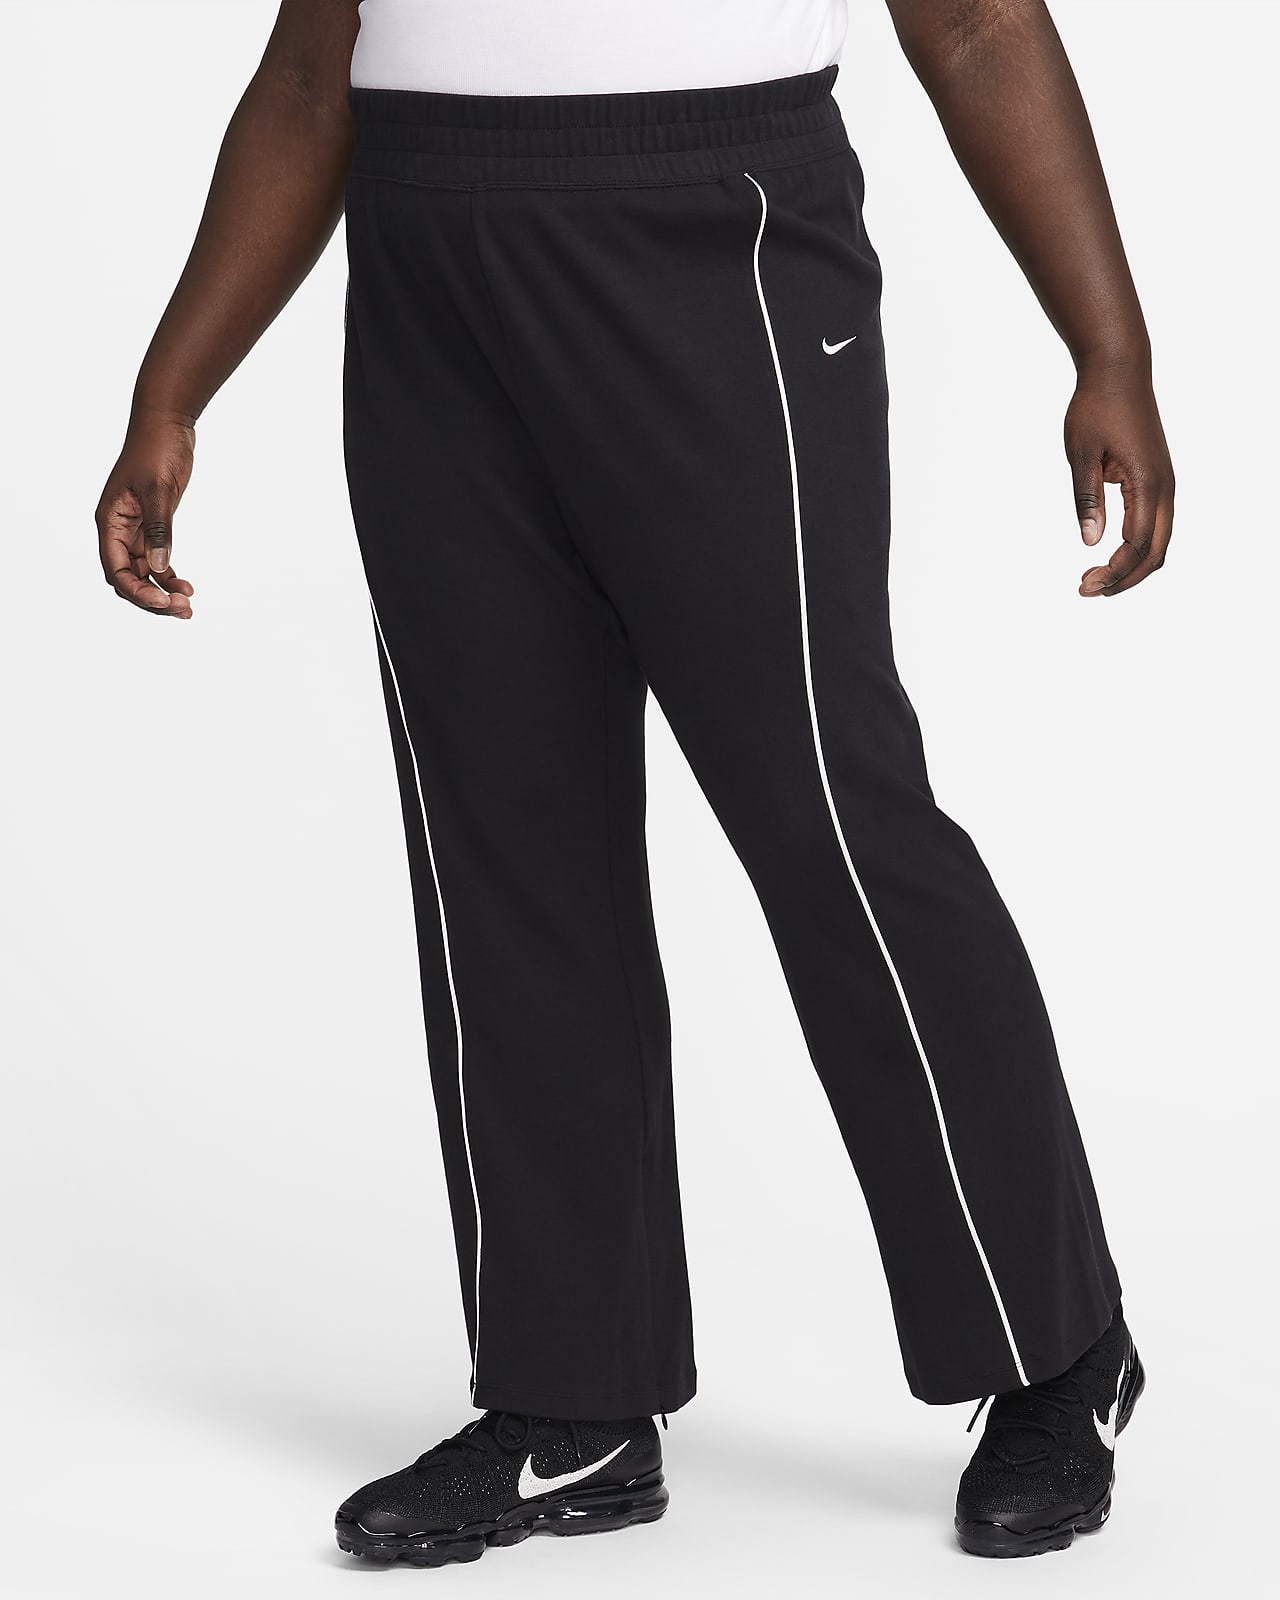 Nike Slit Sweat Pants for Men